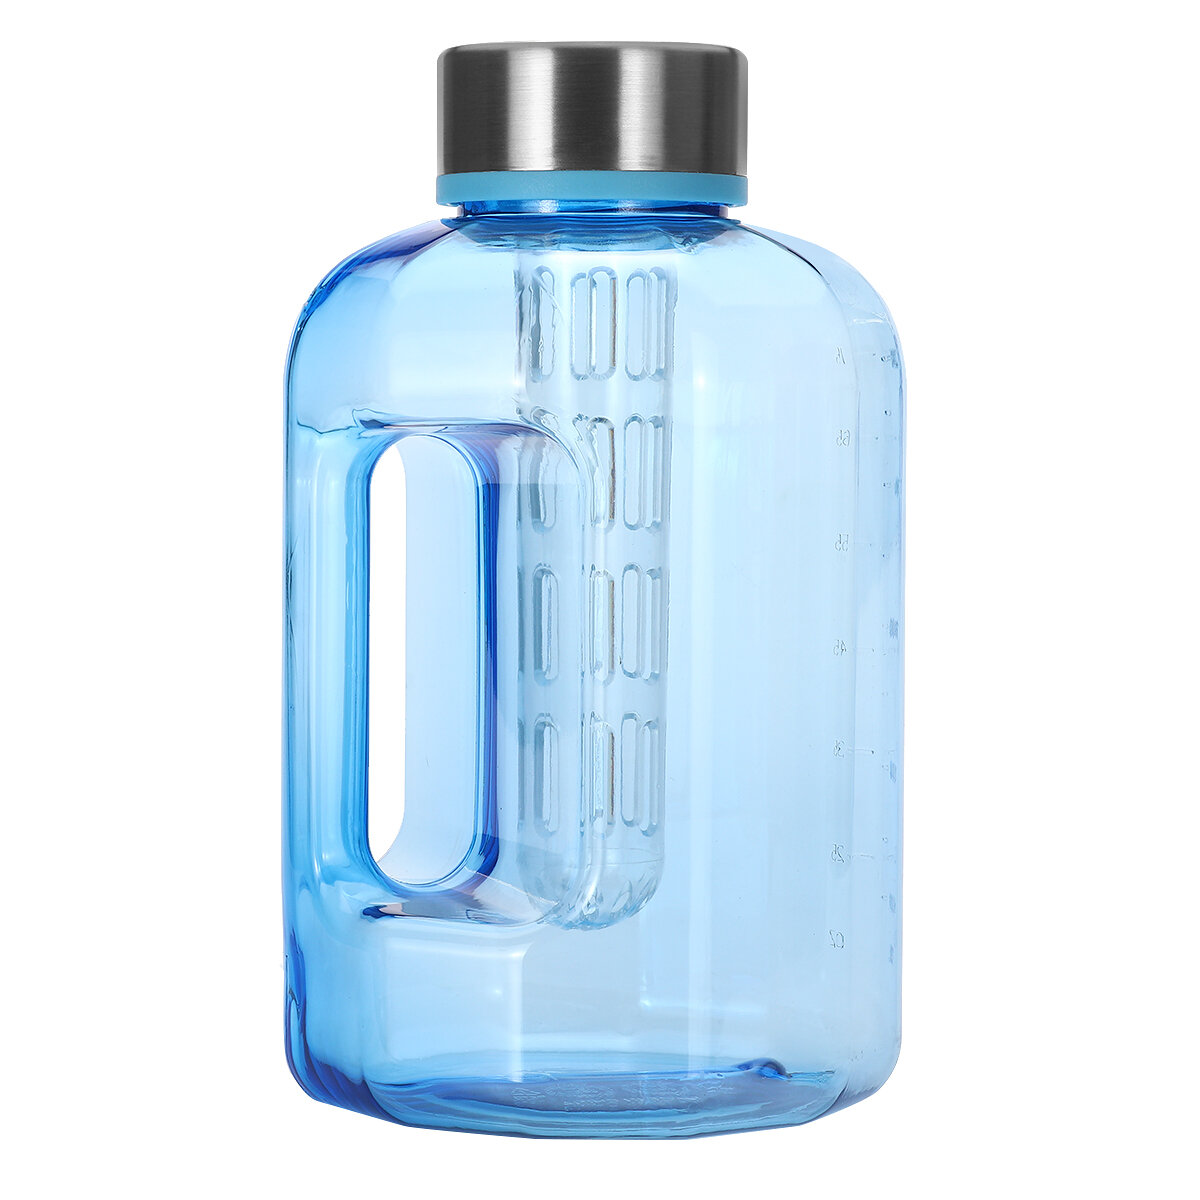 Μεγάλο μπουκάλι αθλητικό νερό χωρητικότητας 2,2L/84oz χωρίς BPA με καπάκι για προπόνηση στο γυμναστήριο, πεζοπορία και ποδηλασία.